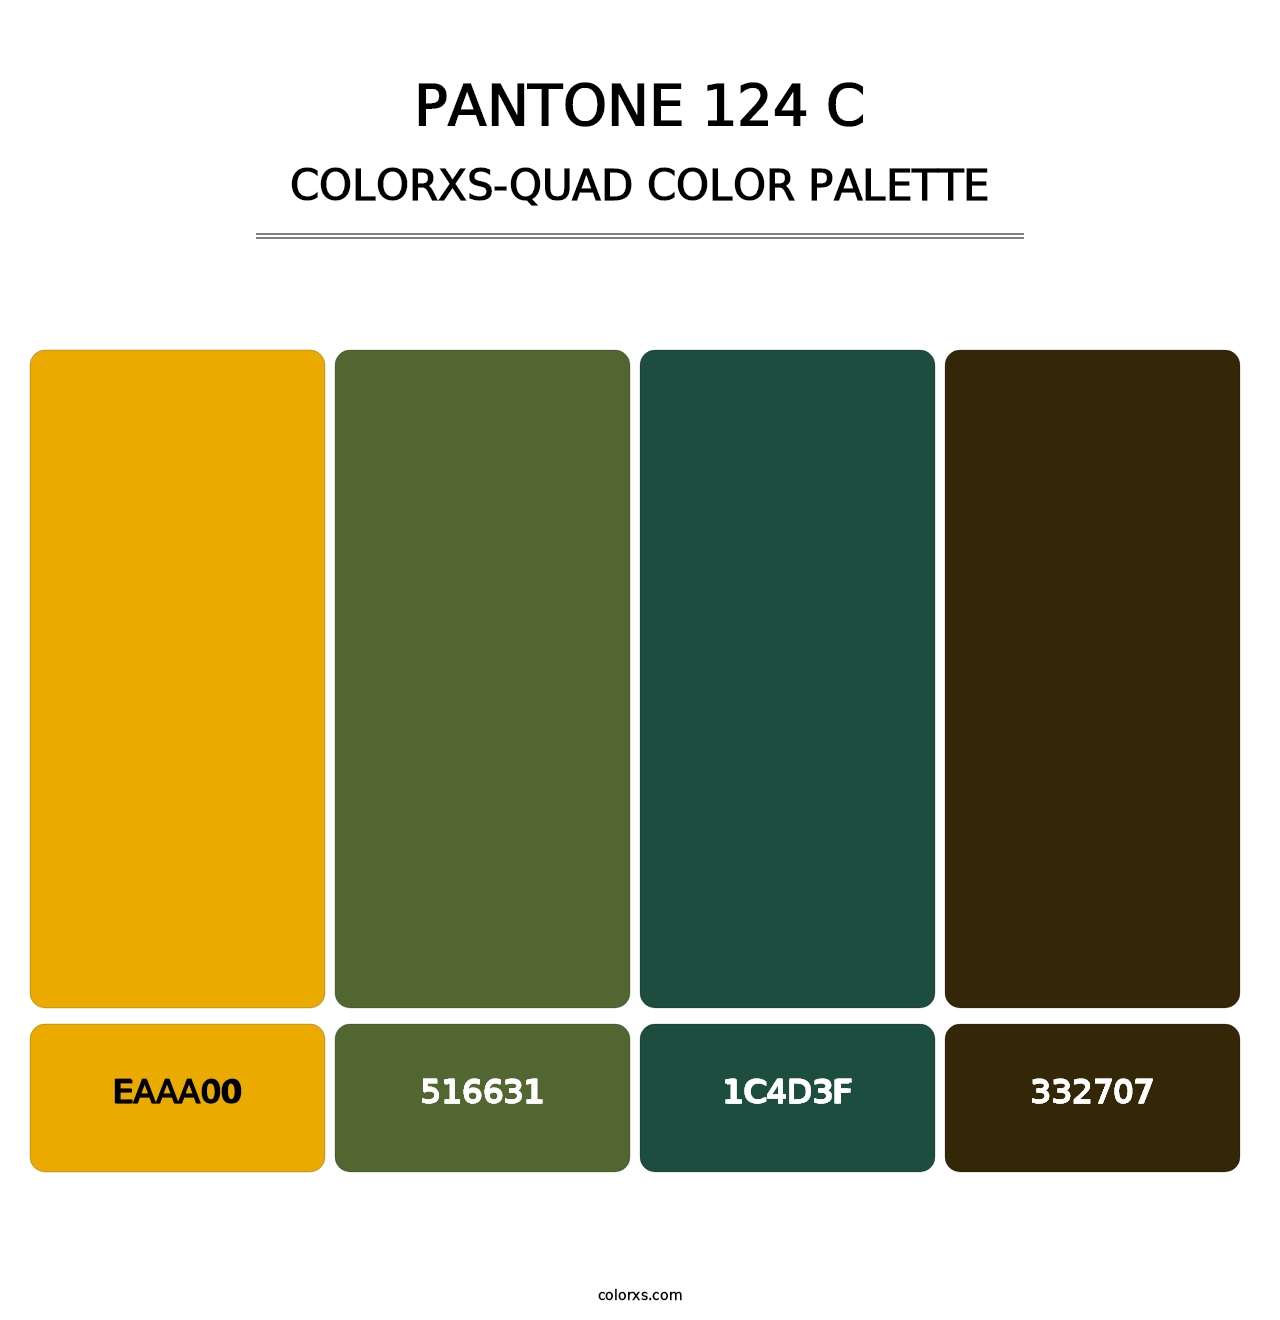 PANTONE 124 C - Colorxs Quad Palette